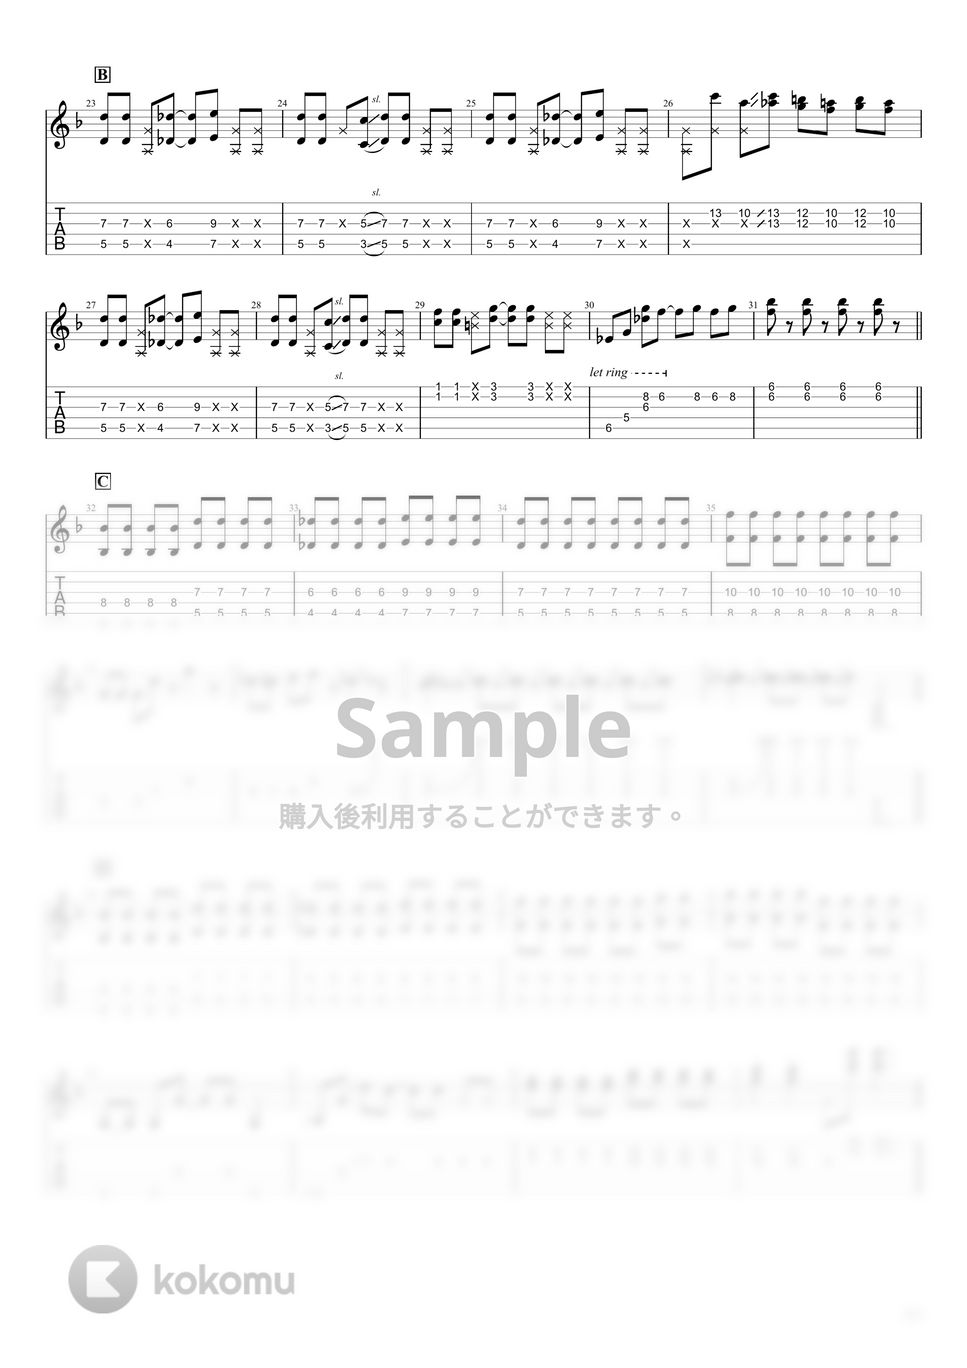 音羽-otoha- - 青春コンプレックス　ぼっちざろっく！OP (アニメサイズのギターパートのタブ譜です) by しゅうじ